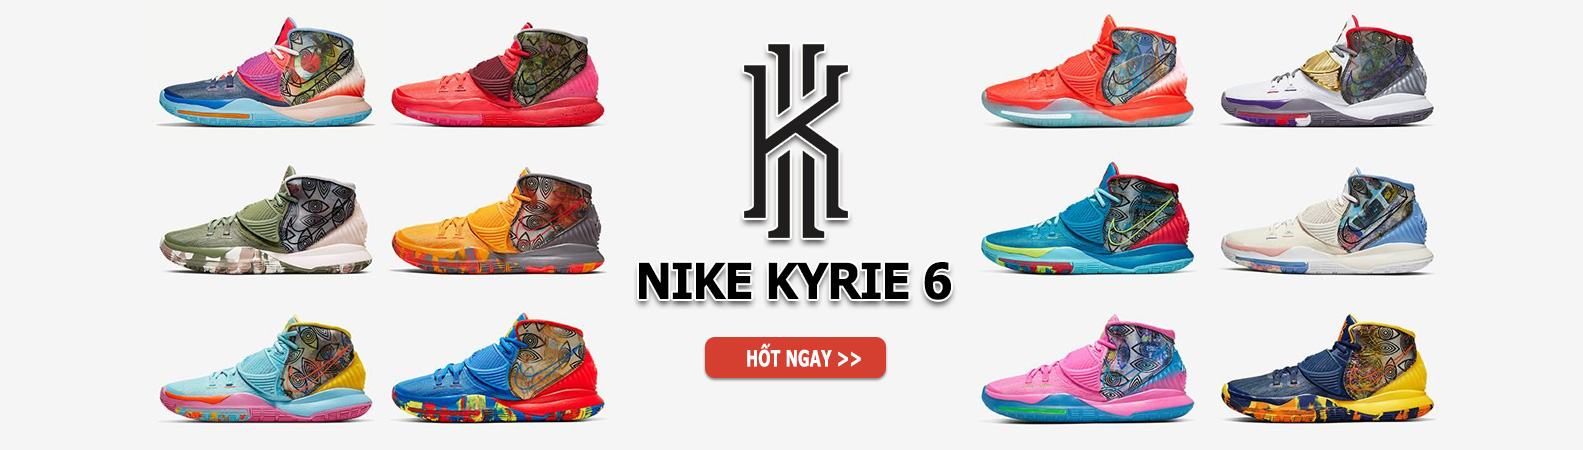 Giày bóng rổ Nike Kyrie 6 chính hãng | NeverStopShop.com